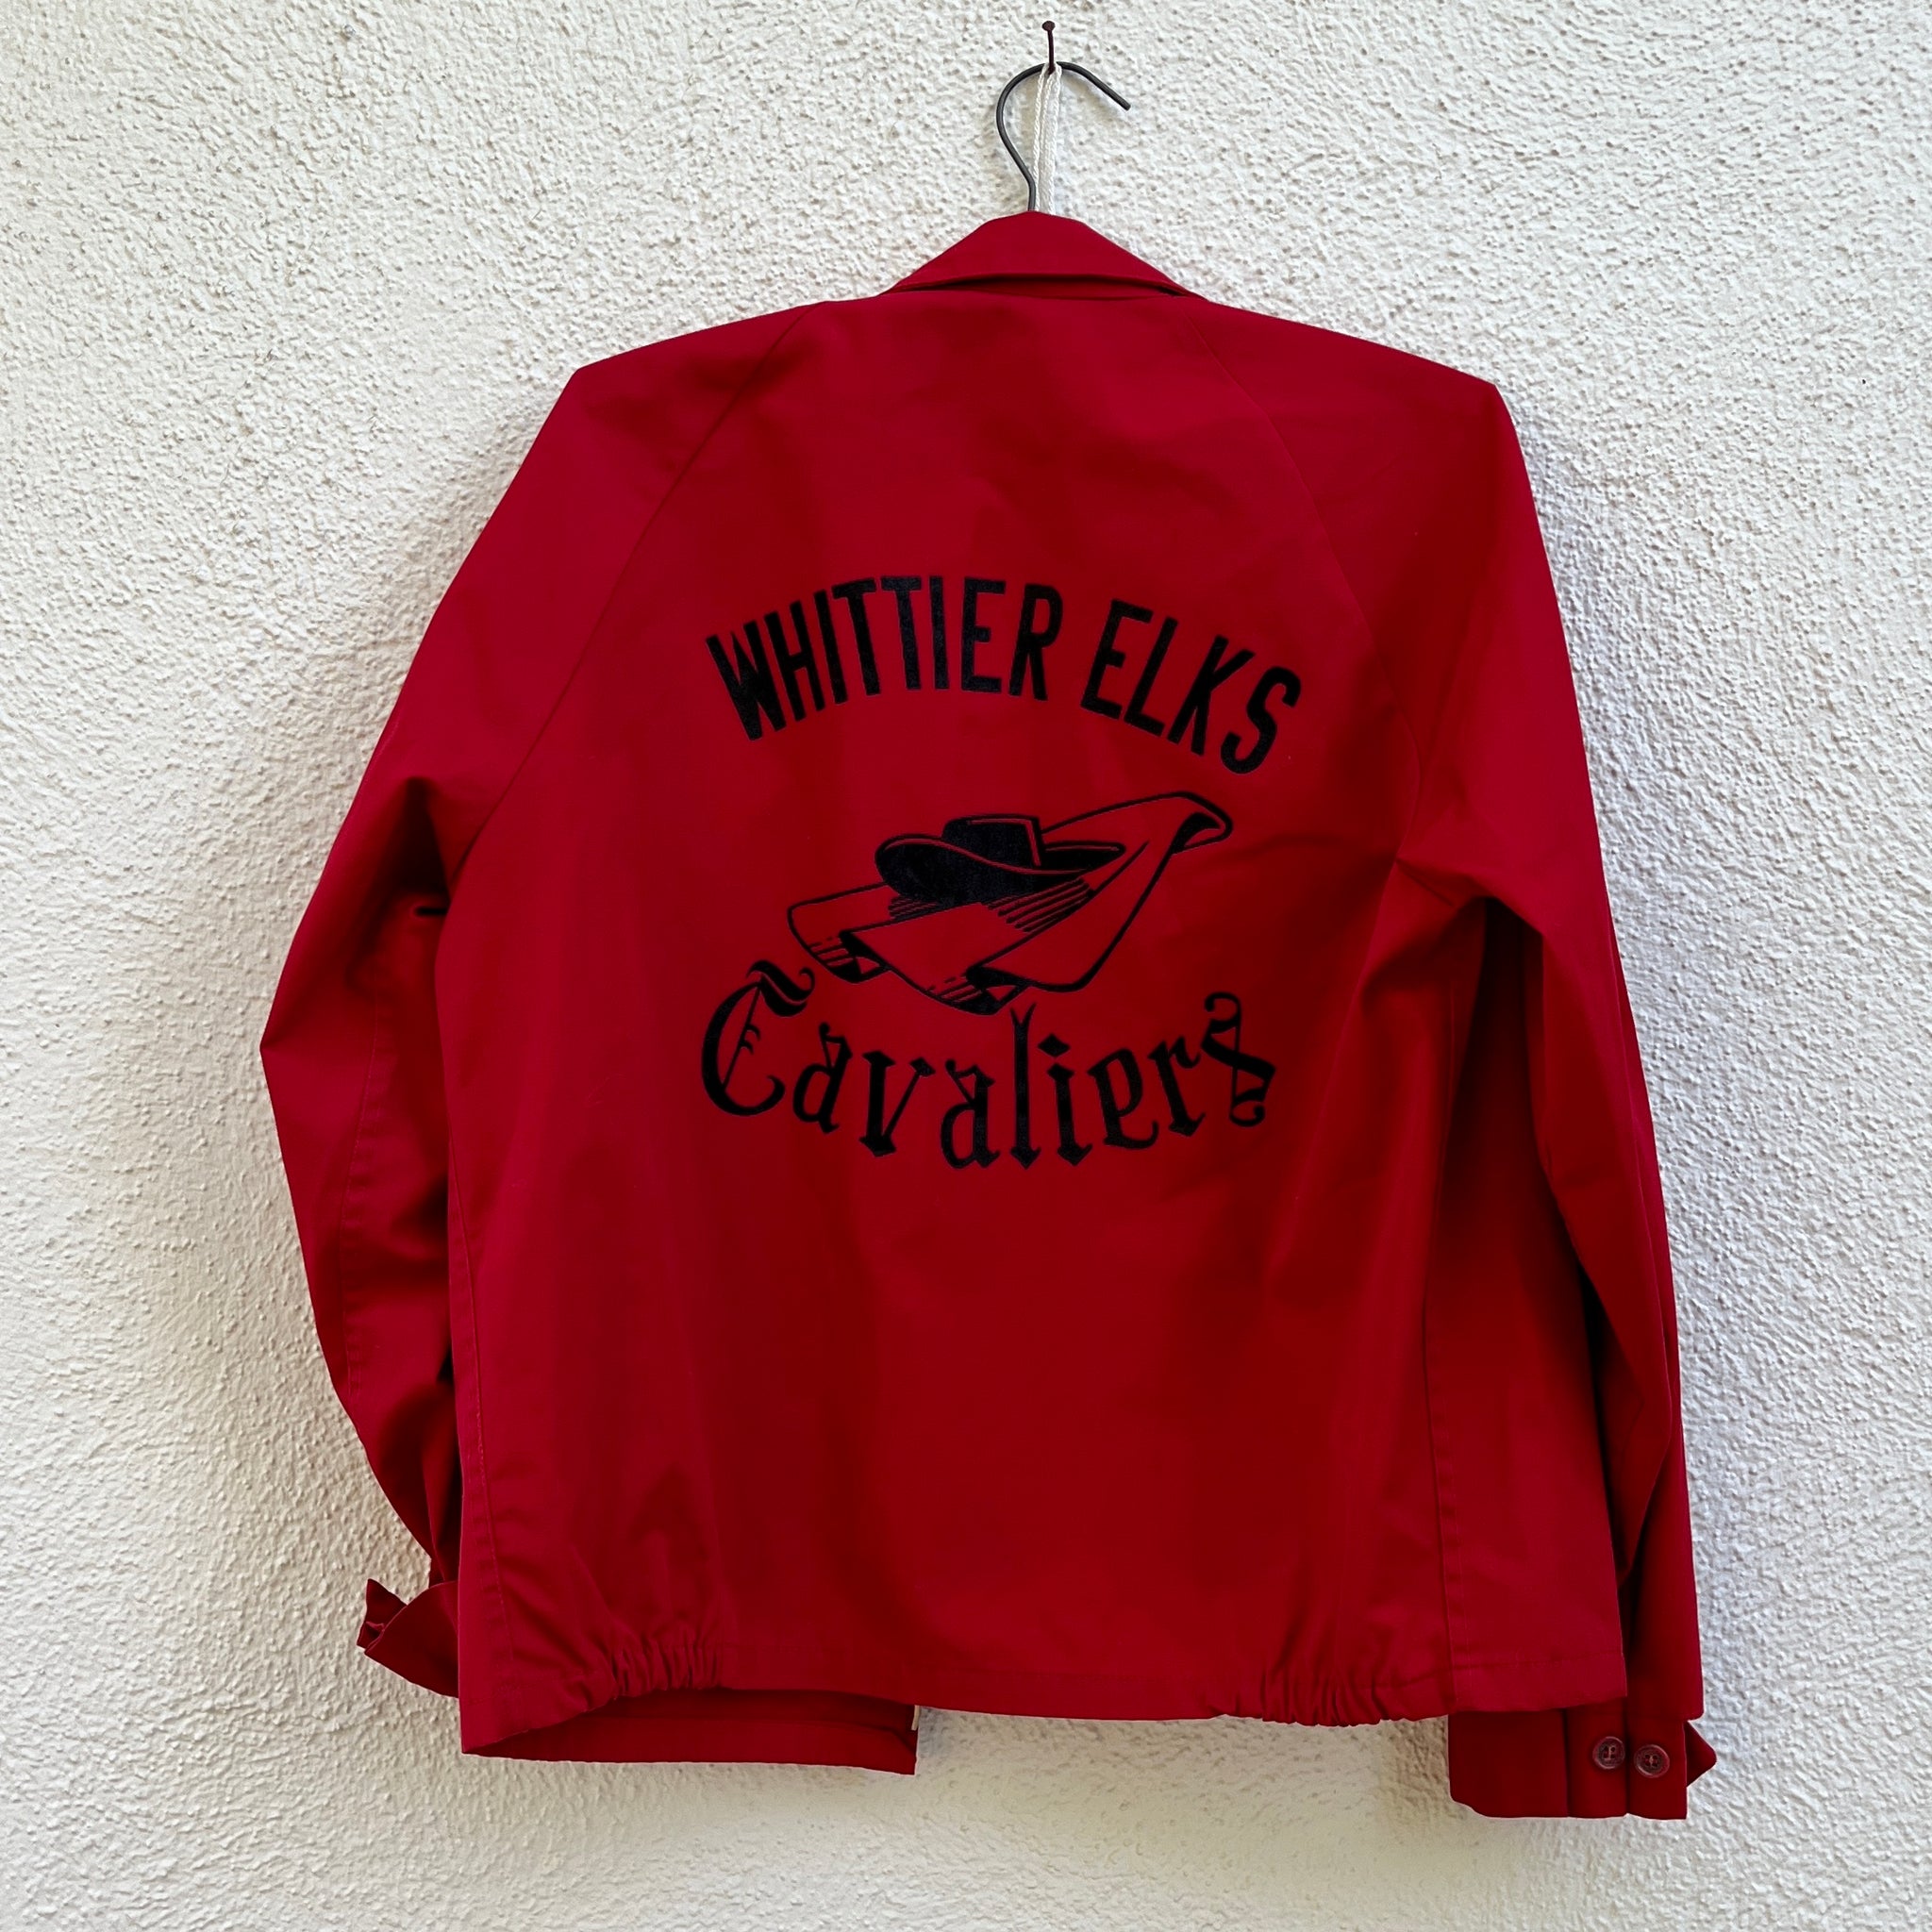 Whittier Elks Cavaliers Jacket